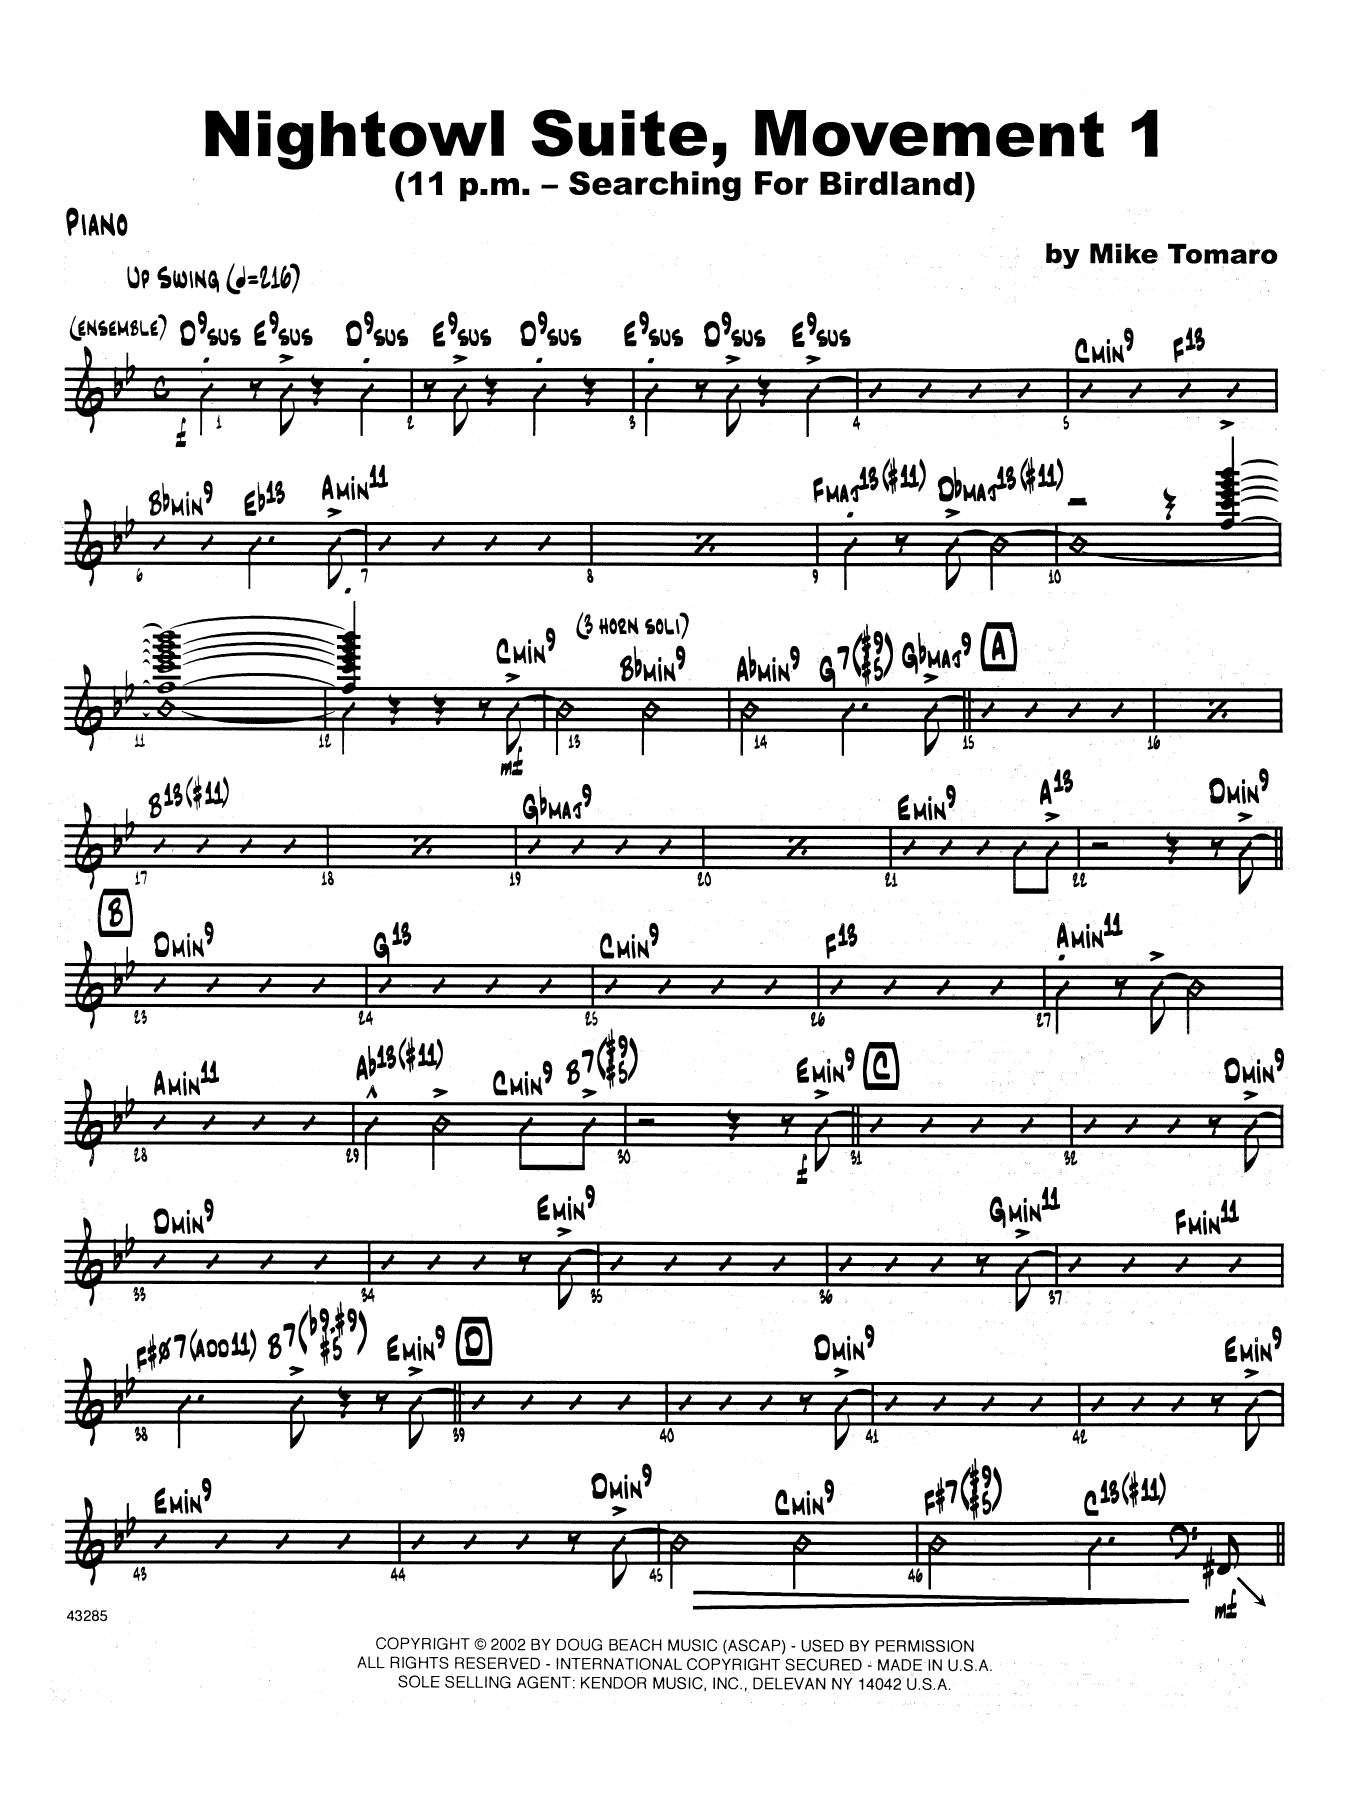 Download Mike Tomaro Nightowl Suite, Mvt. 1 - Piano Sheet Music